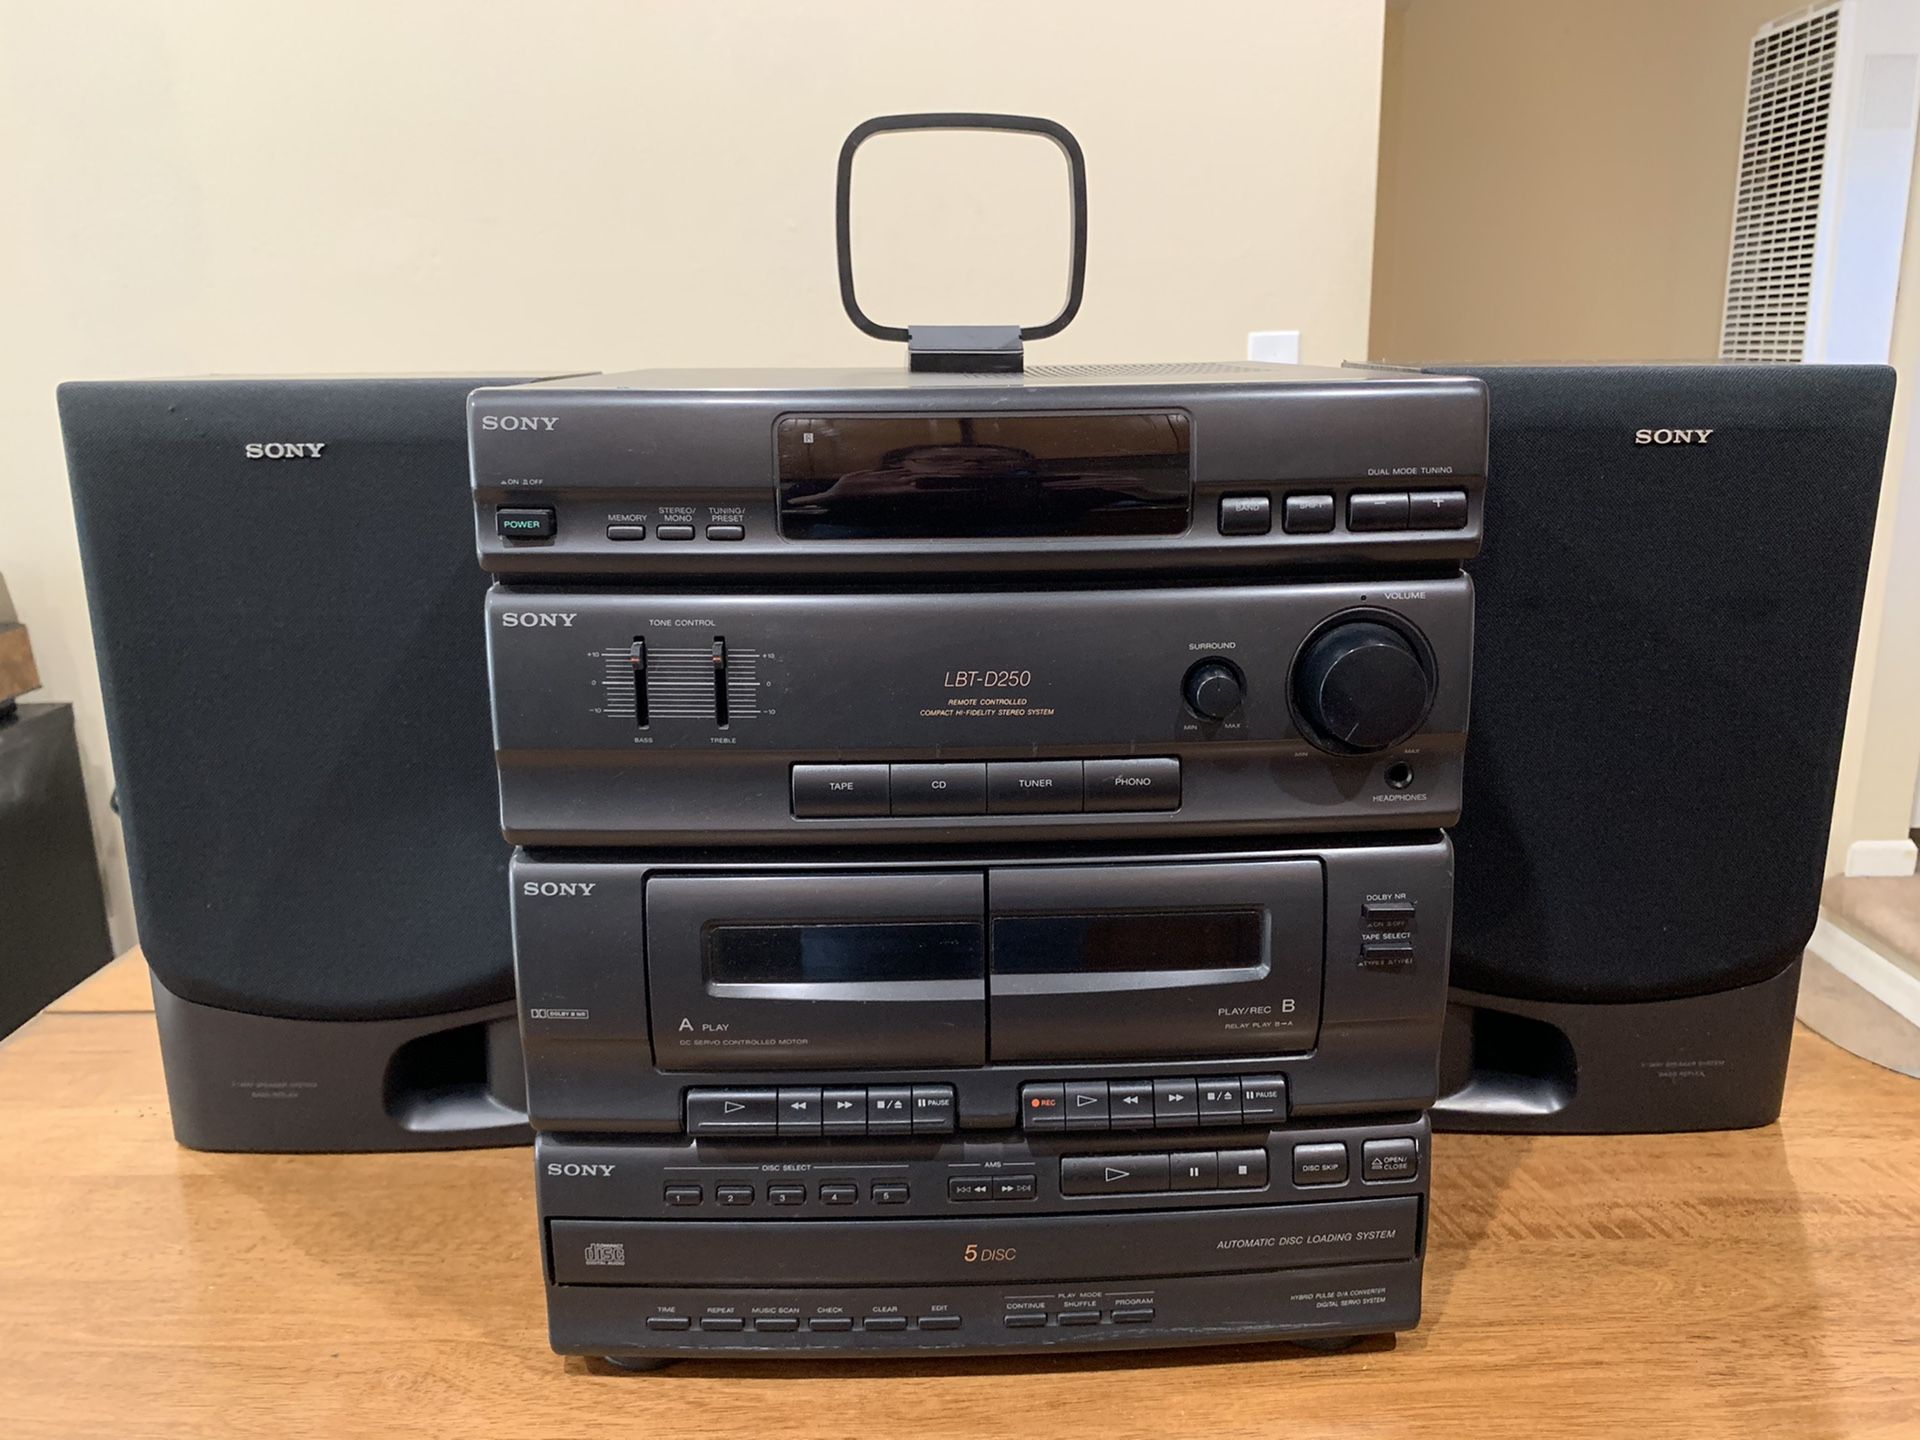 Sony LBT-D250 Stereo Rack System Cassette 5 Disc CD Changer (2) SS-D255 Speakers